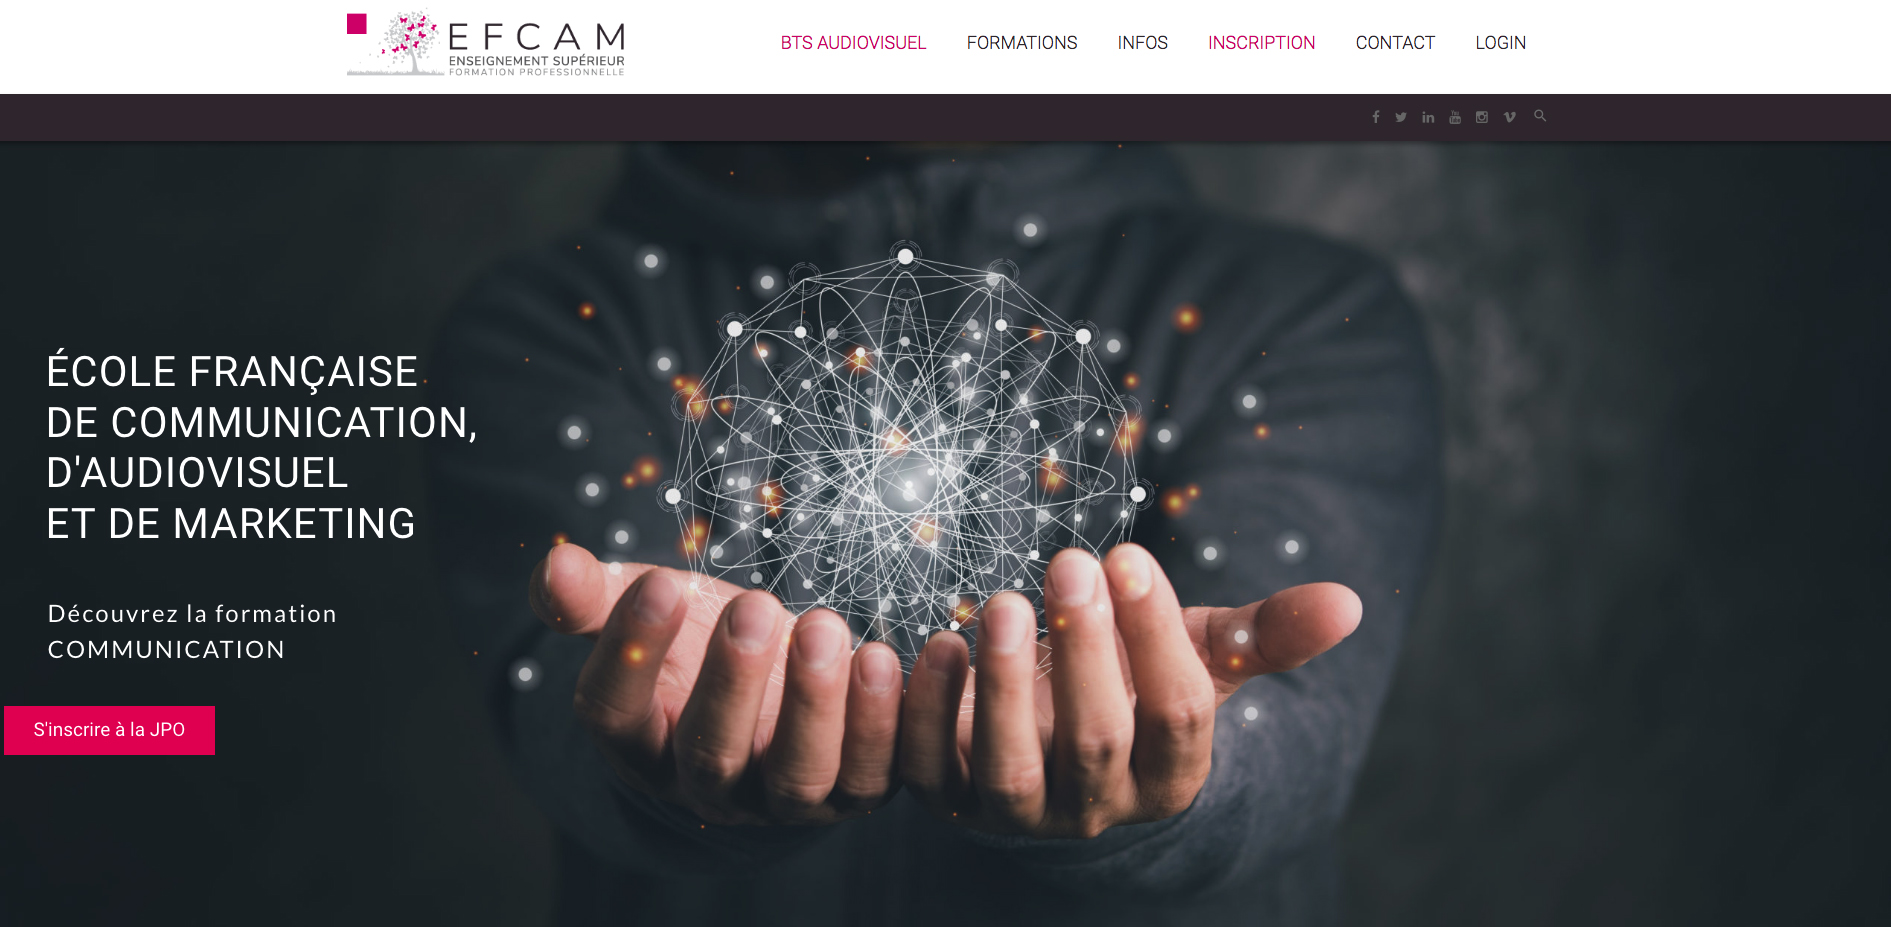 EFCAM website mockup